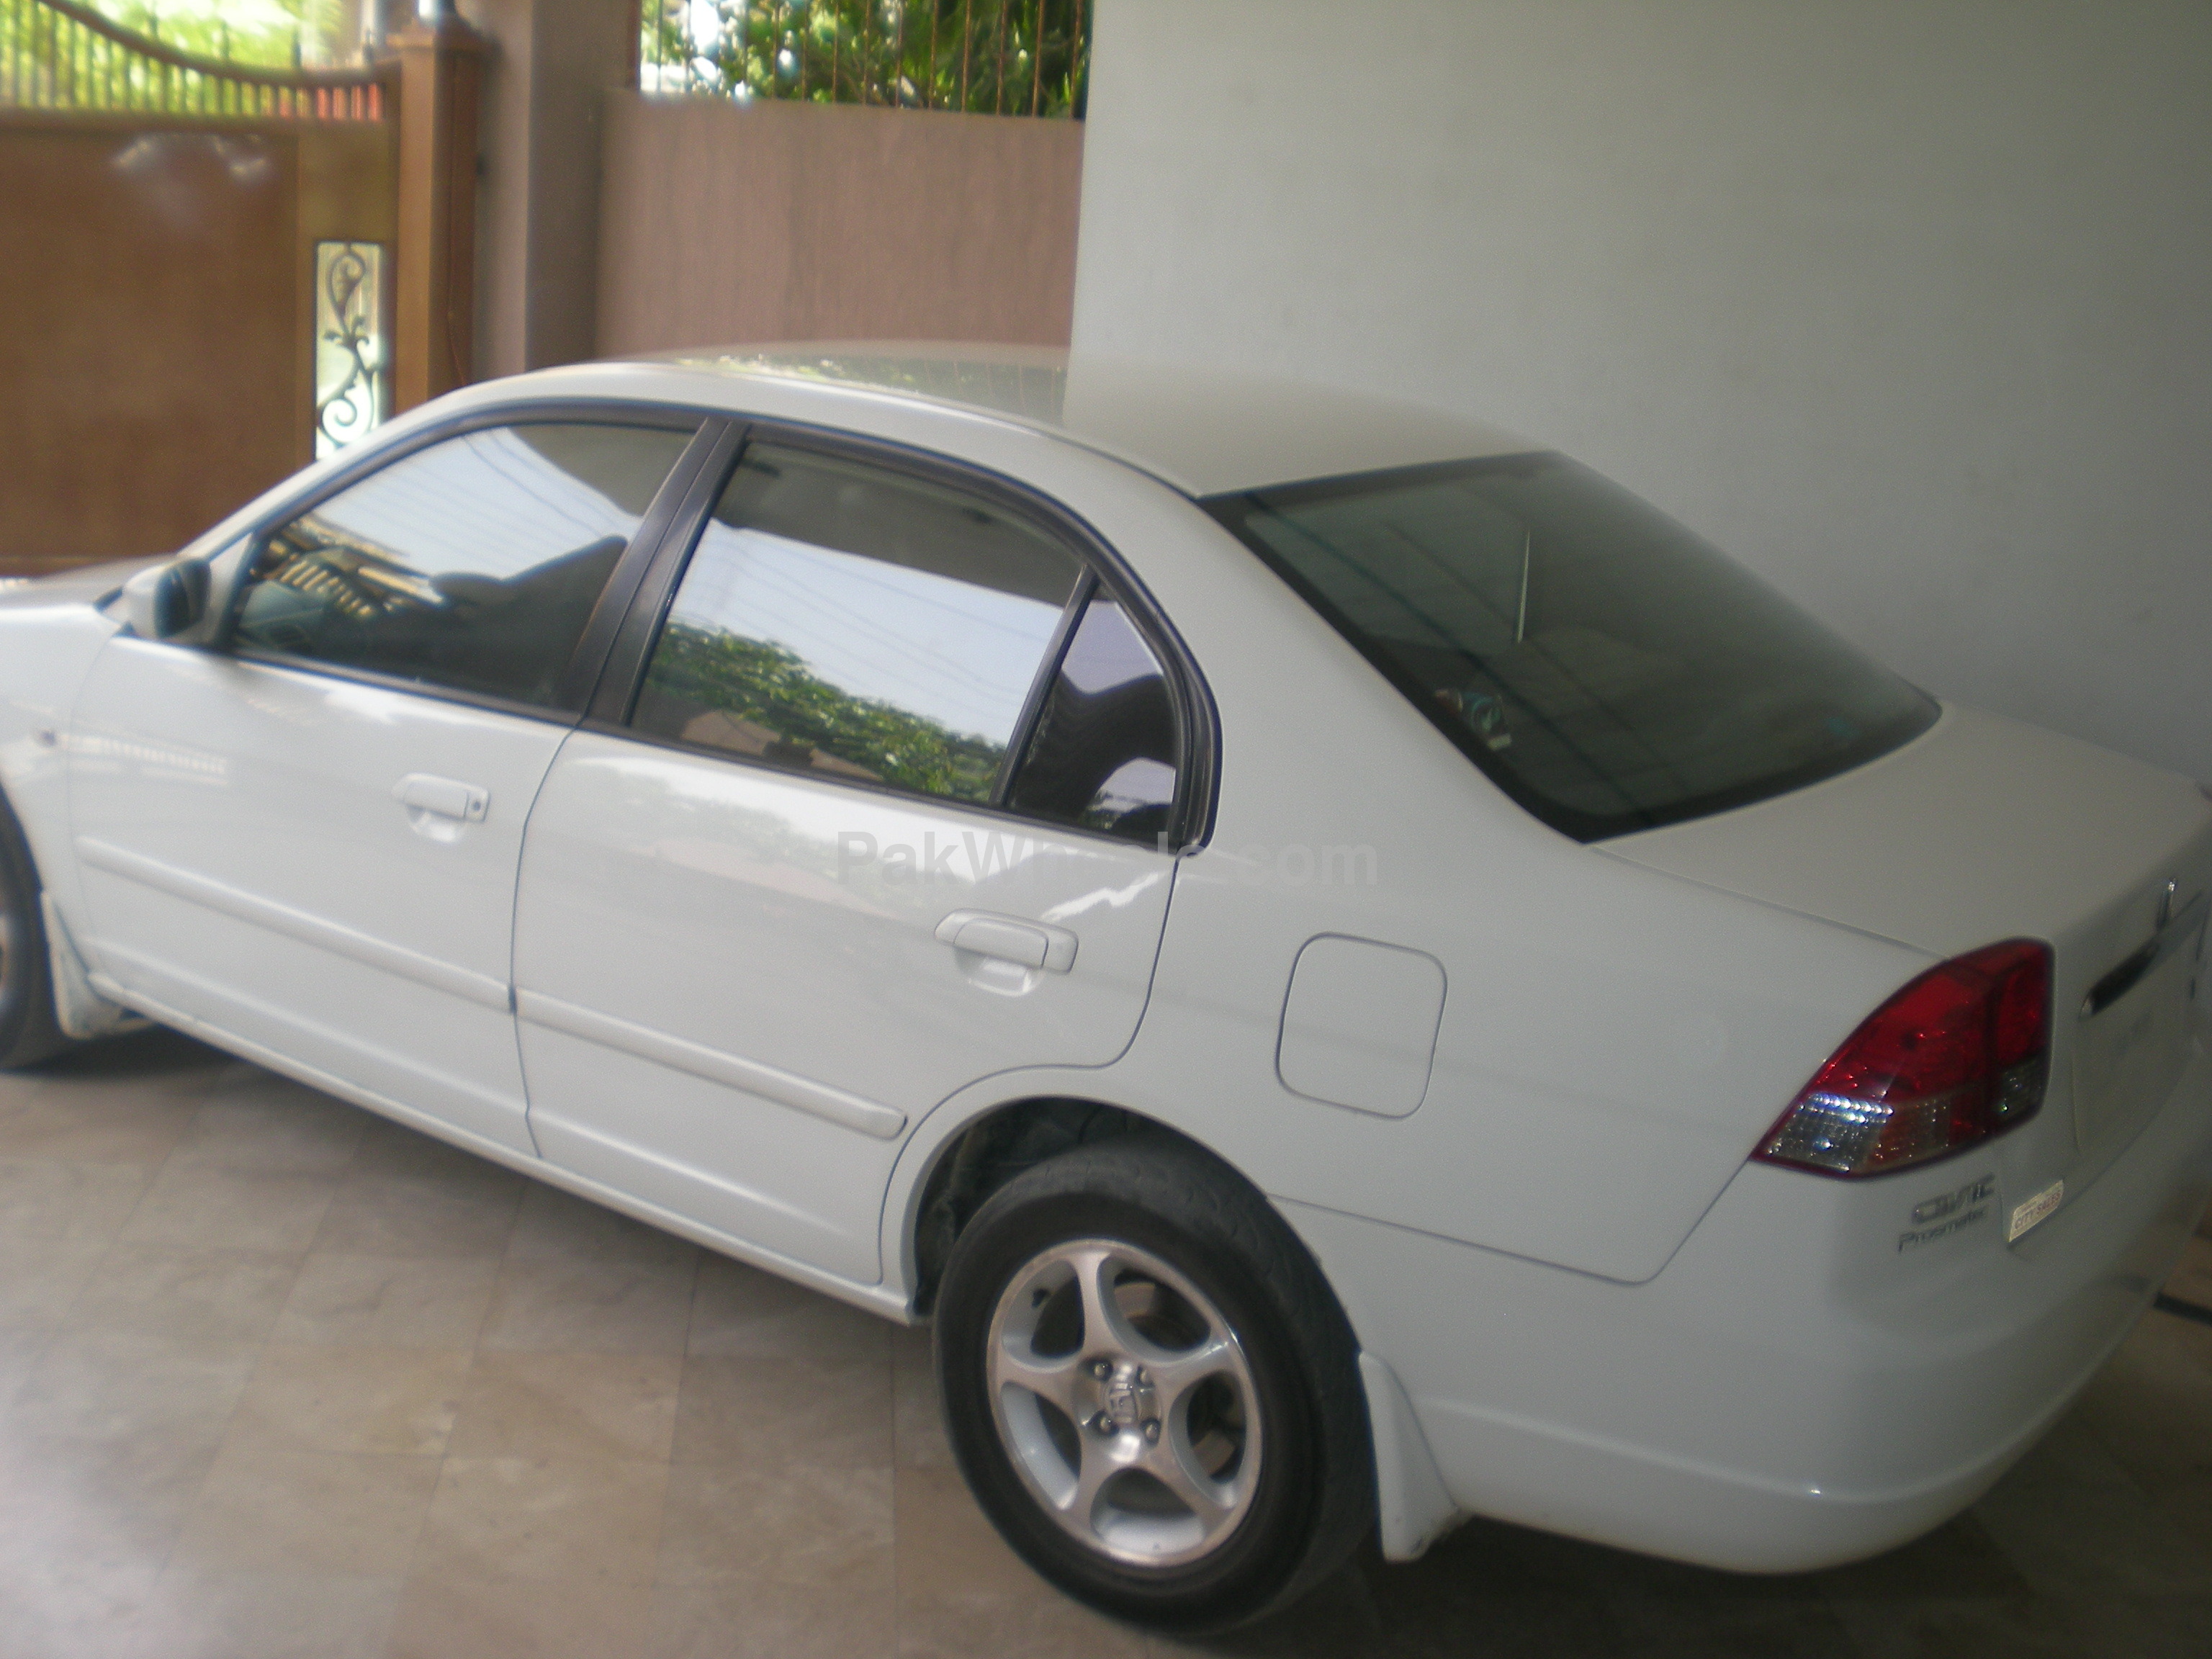 Honda Civic - 2002 naveed ahmad Image-1